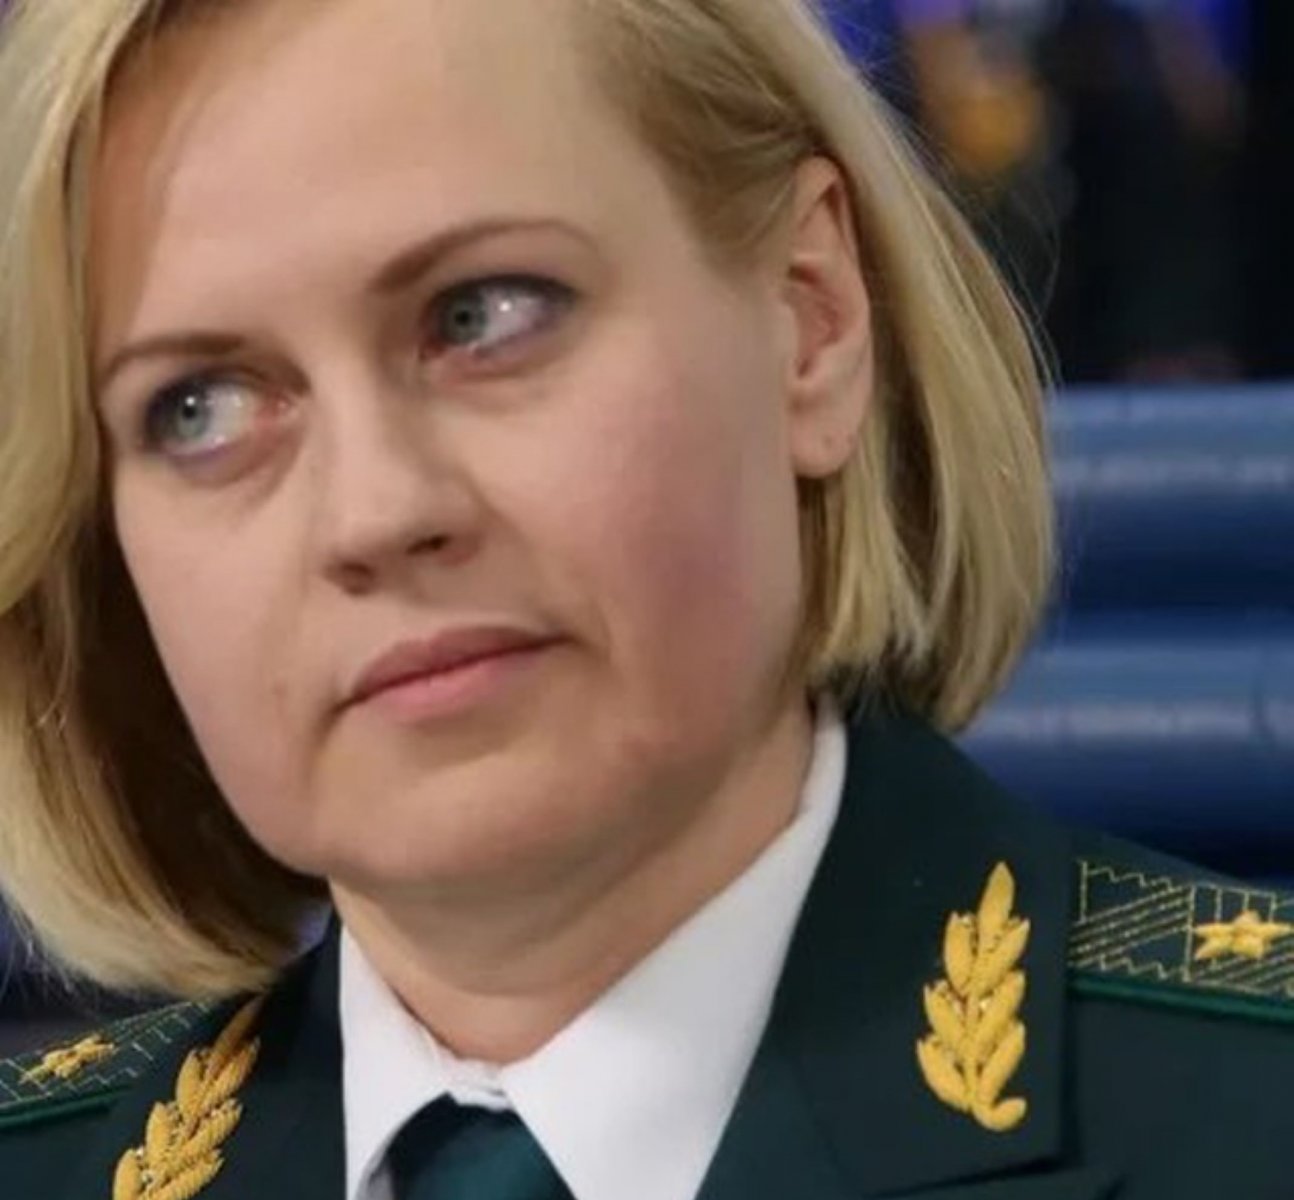 Басманный суд Москвы арестовал генерал-полковника Ягодкину